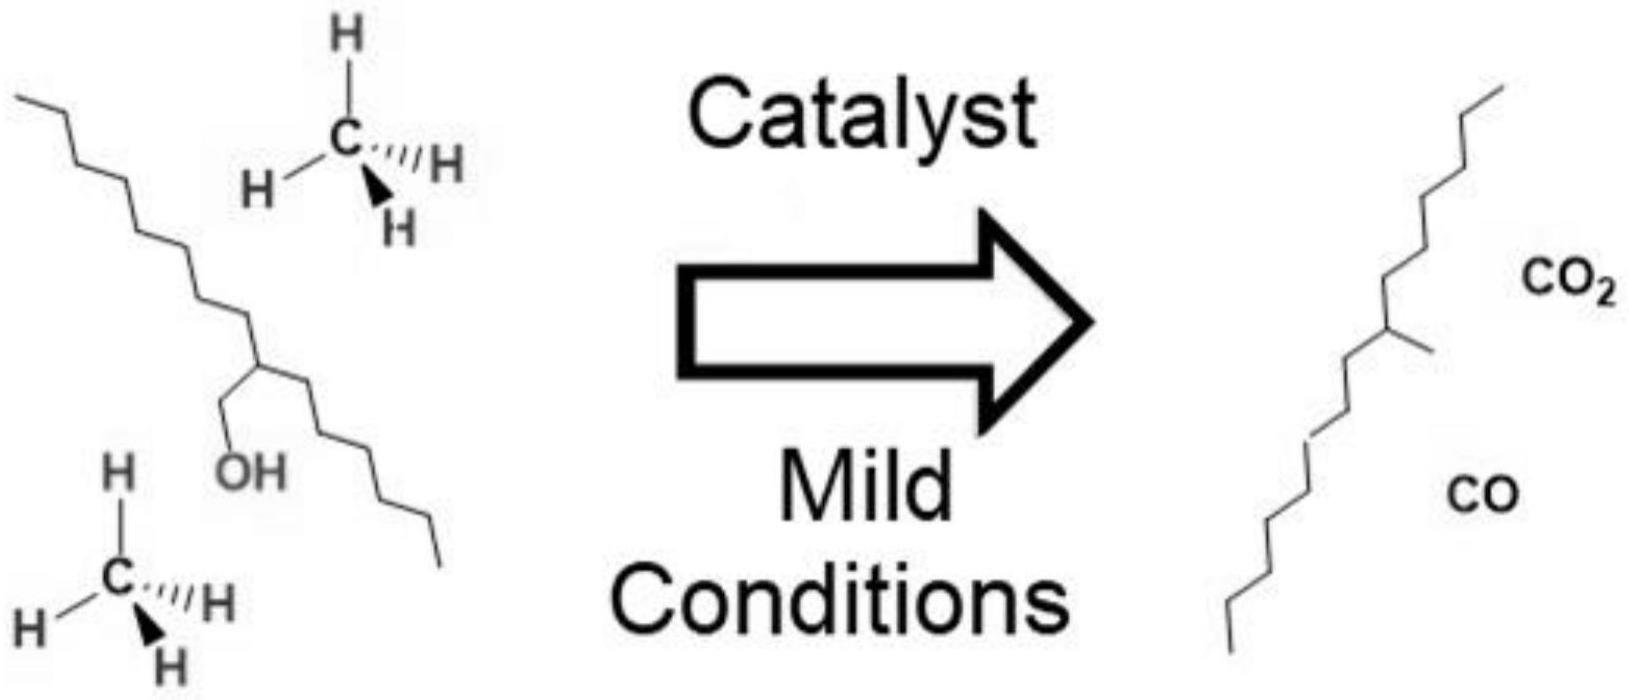 多金属负载的过渡金属氧化物催化剂及其制备方法和在生产可再生燃油中的应用与流程